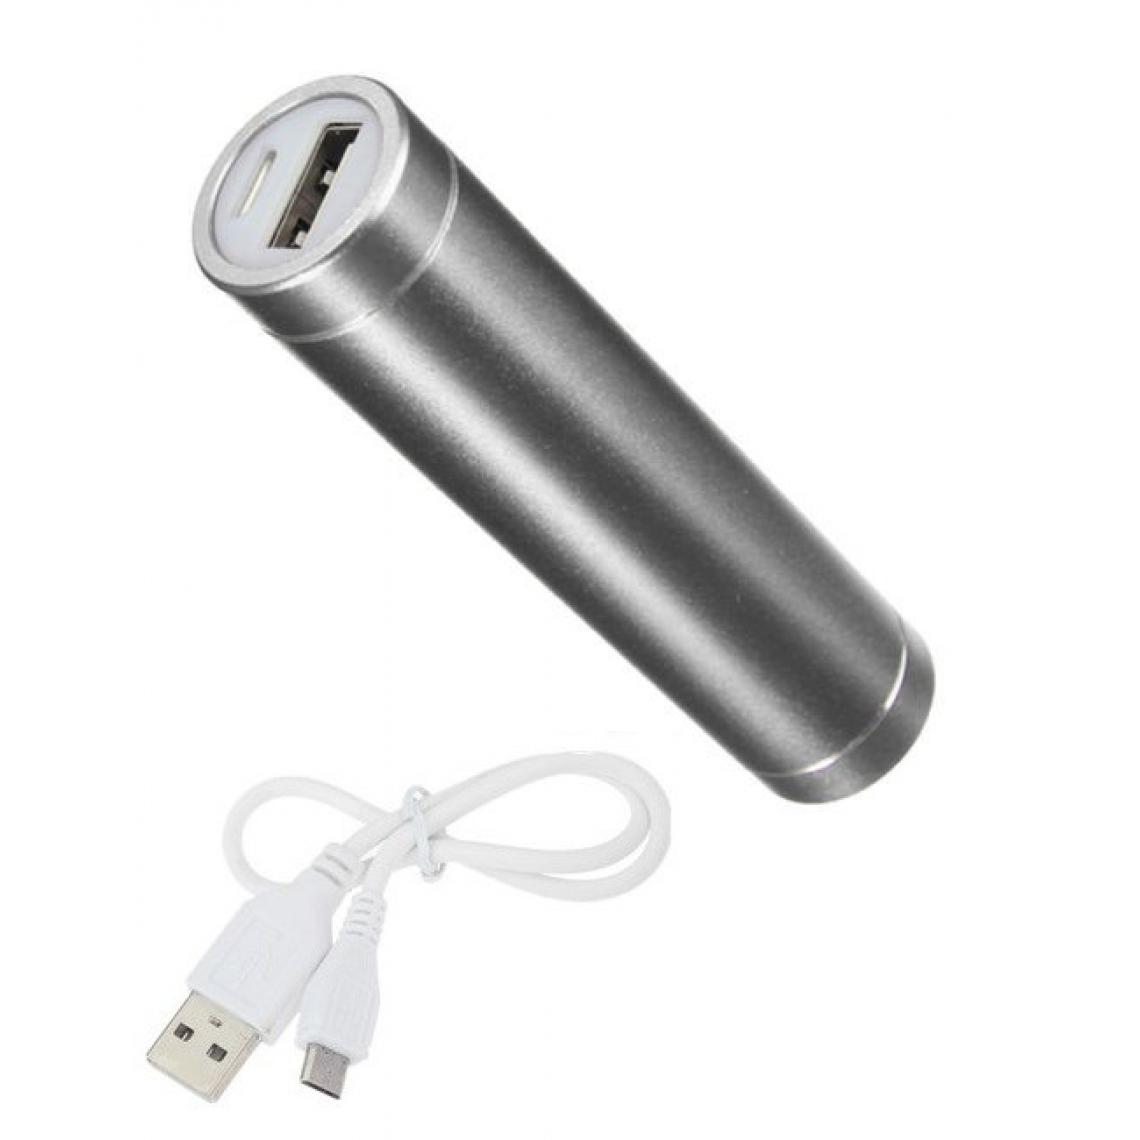 Shot - Batterie Chargeur Externe pour "OPPO Find X2 Lite" Power Bank 2600mAh avec Cable USB/Mirco USB Secours Telephone (ARGENT) - Chargeur secteur téléphone